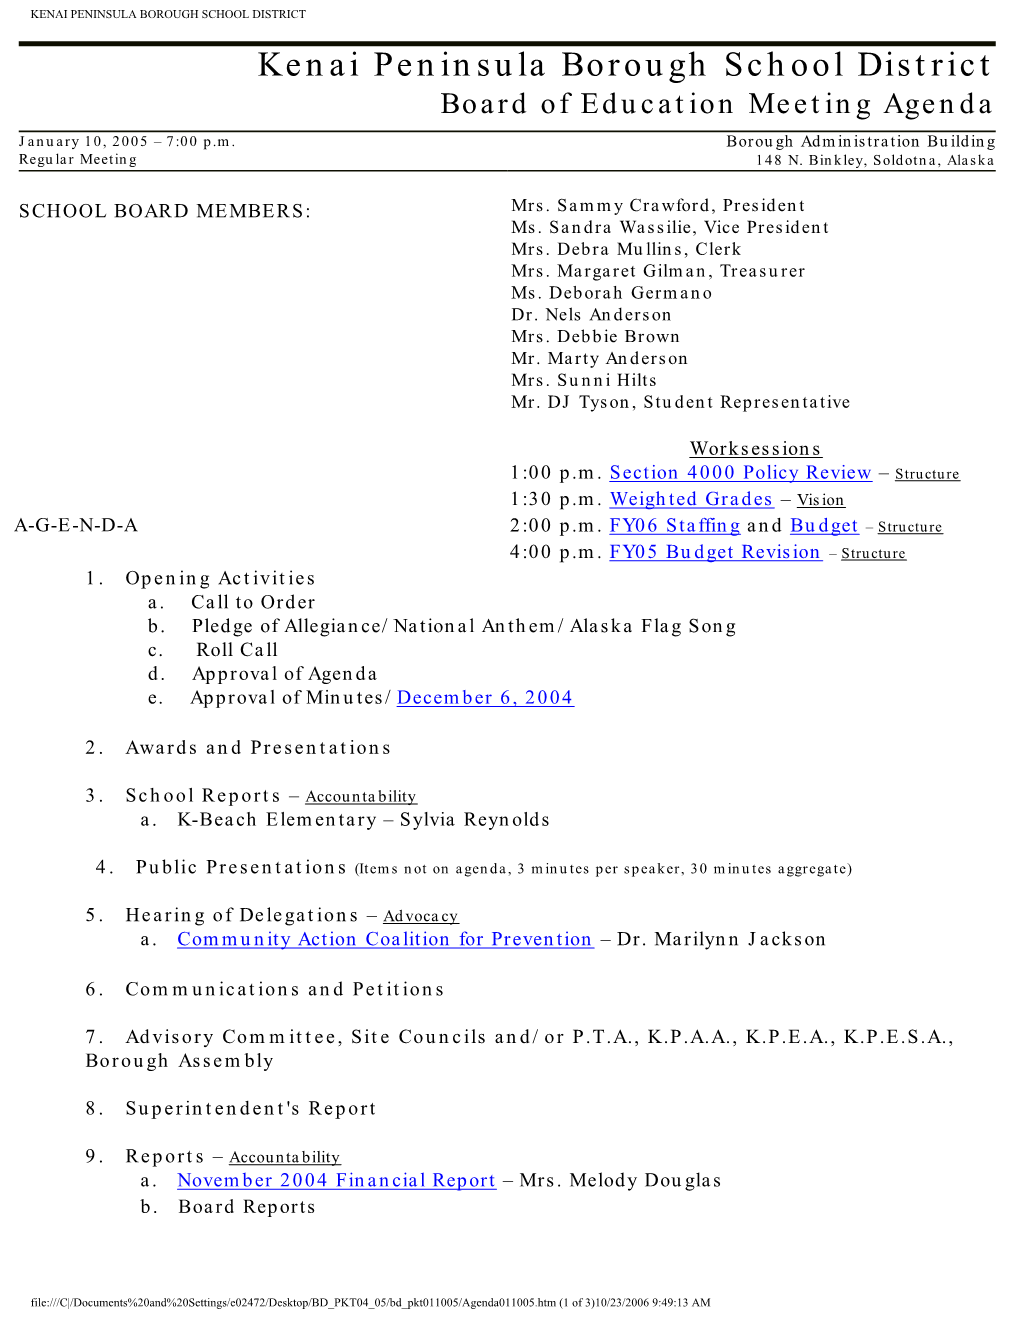 Kenai Peninsula Borough School District Board of Education Meeting Agenda January 10, 2005 – 7:00 P.M